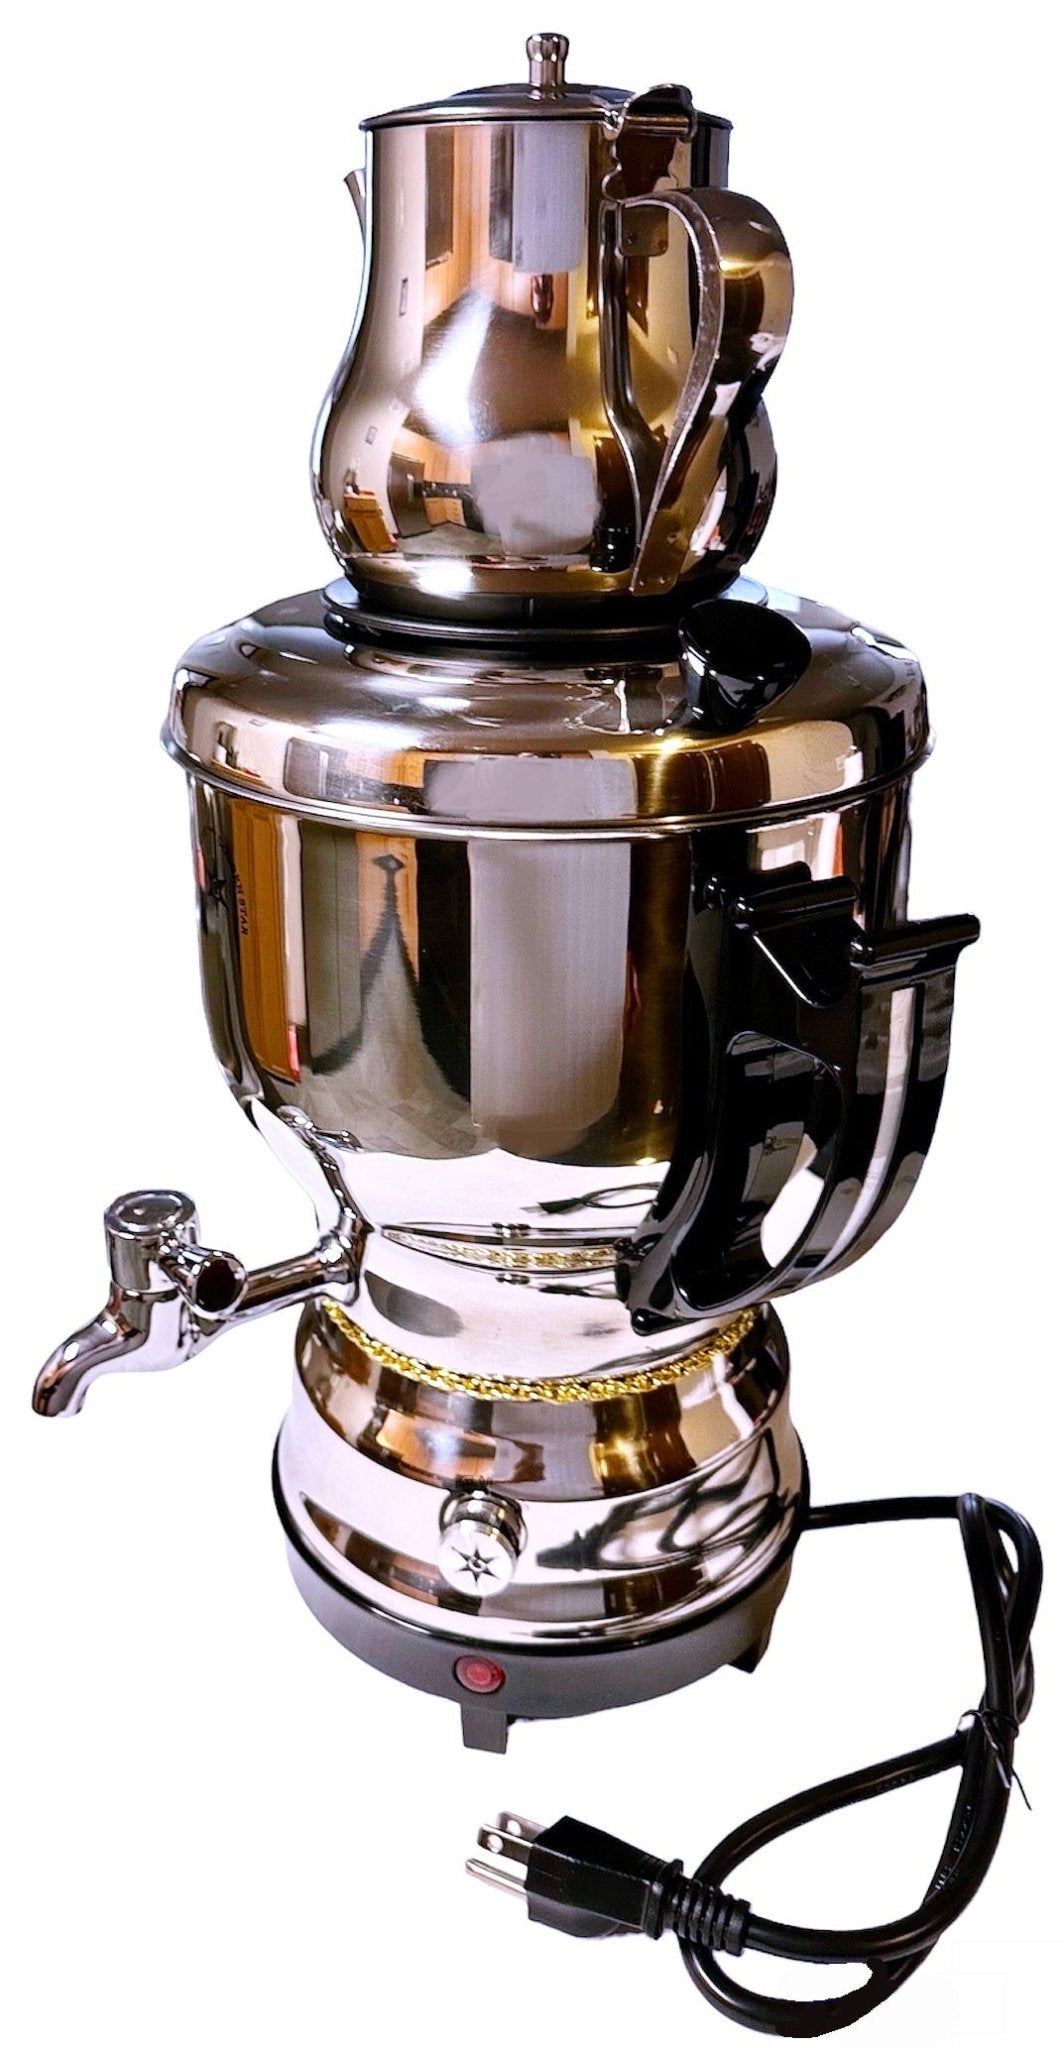  BARITON 3 in 1 water kettle/TEA MAKER/coffee maker